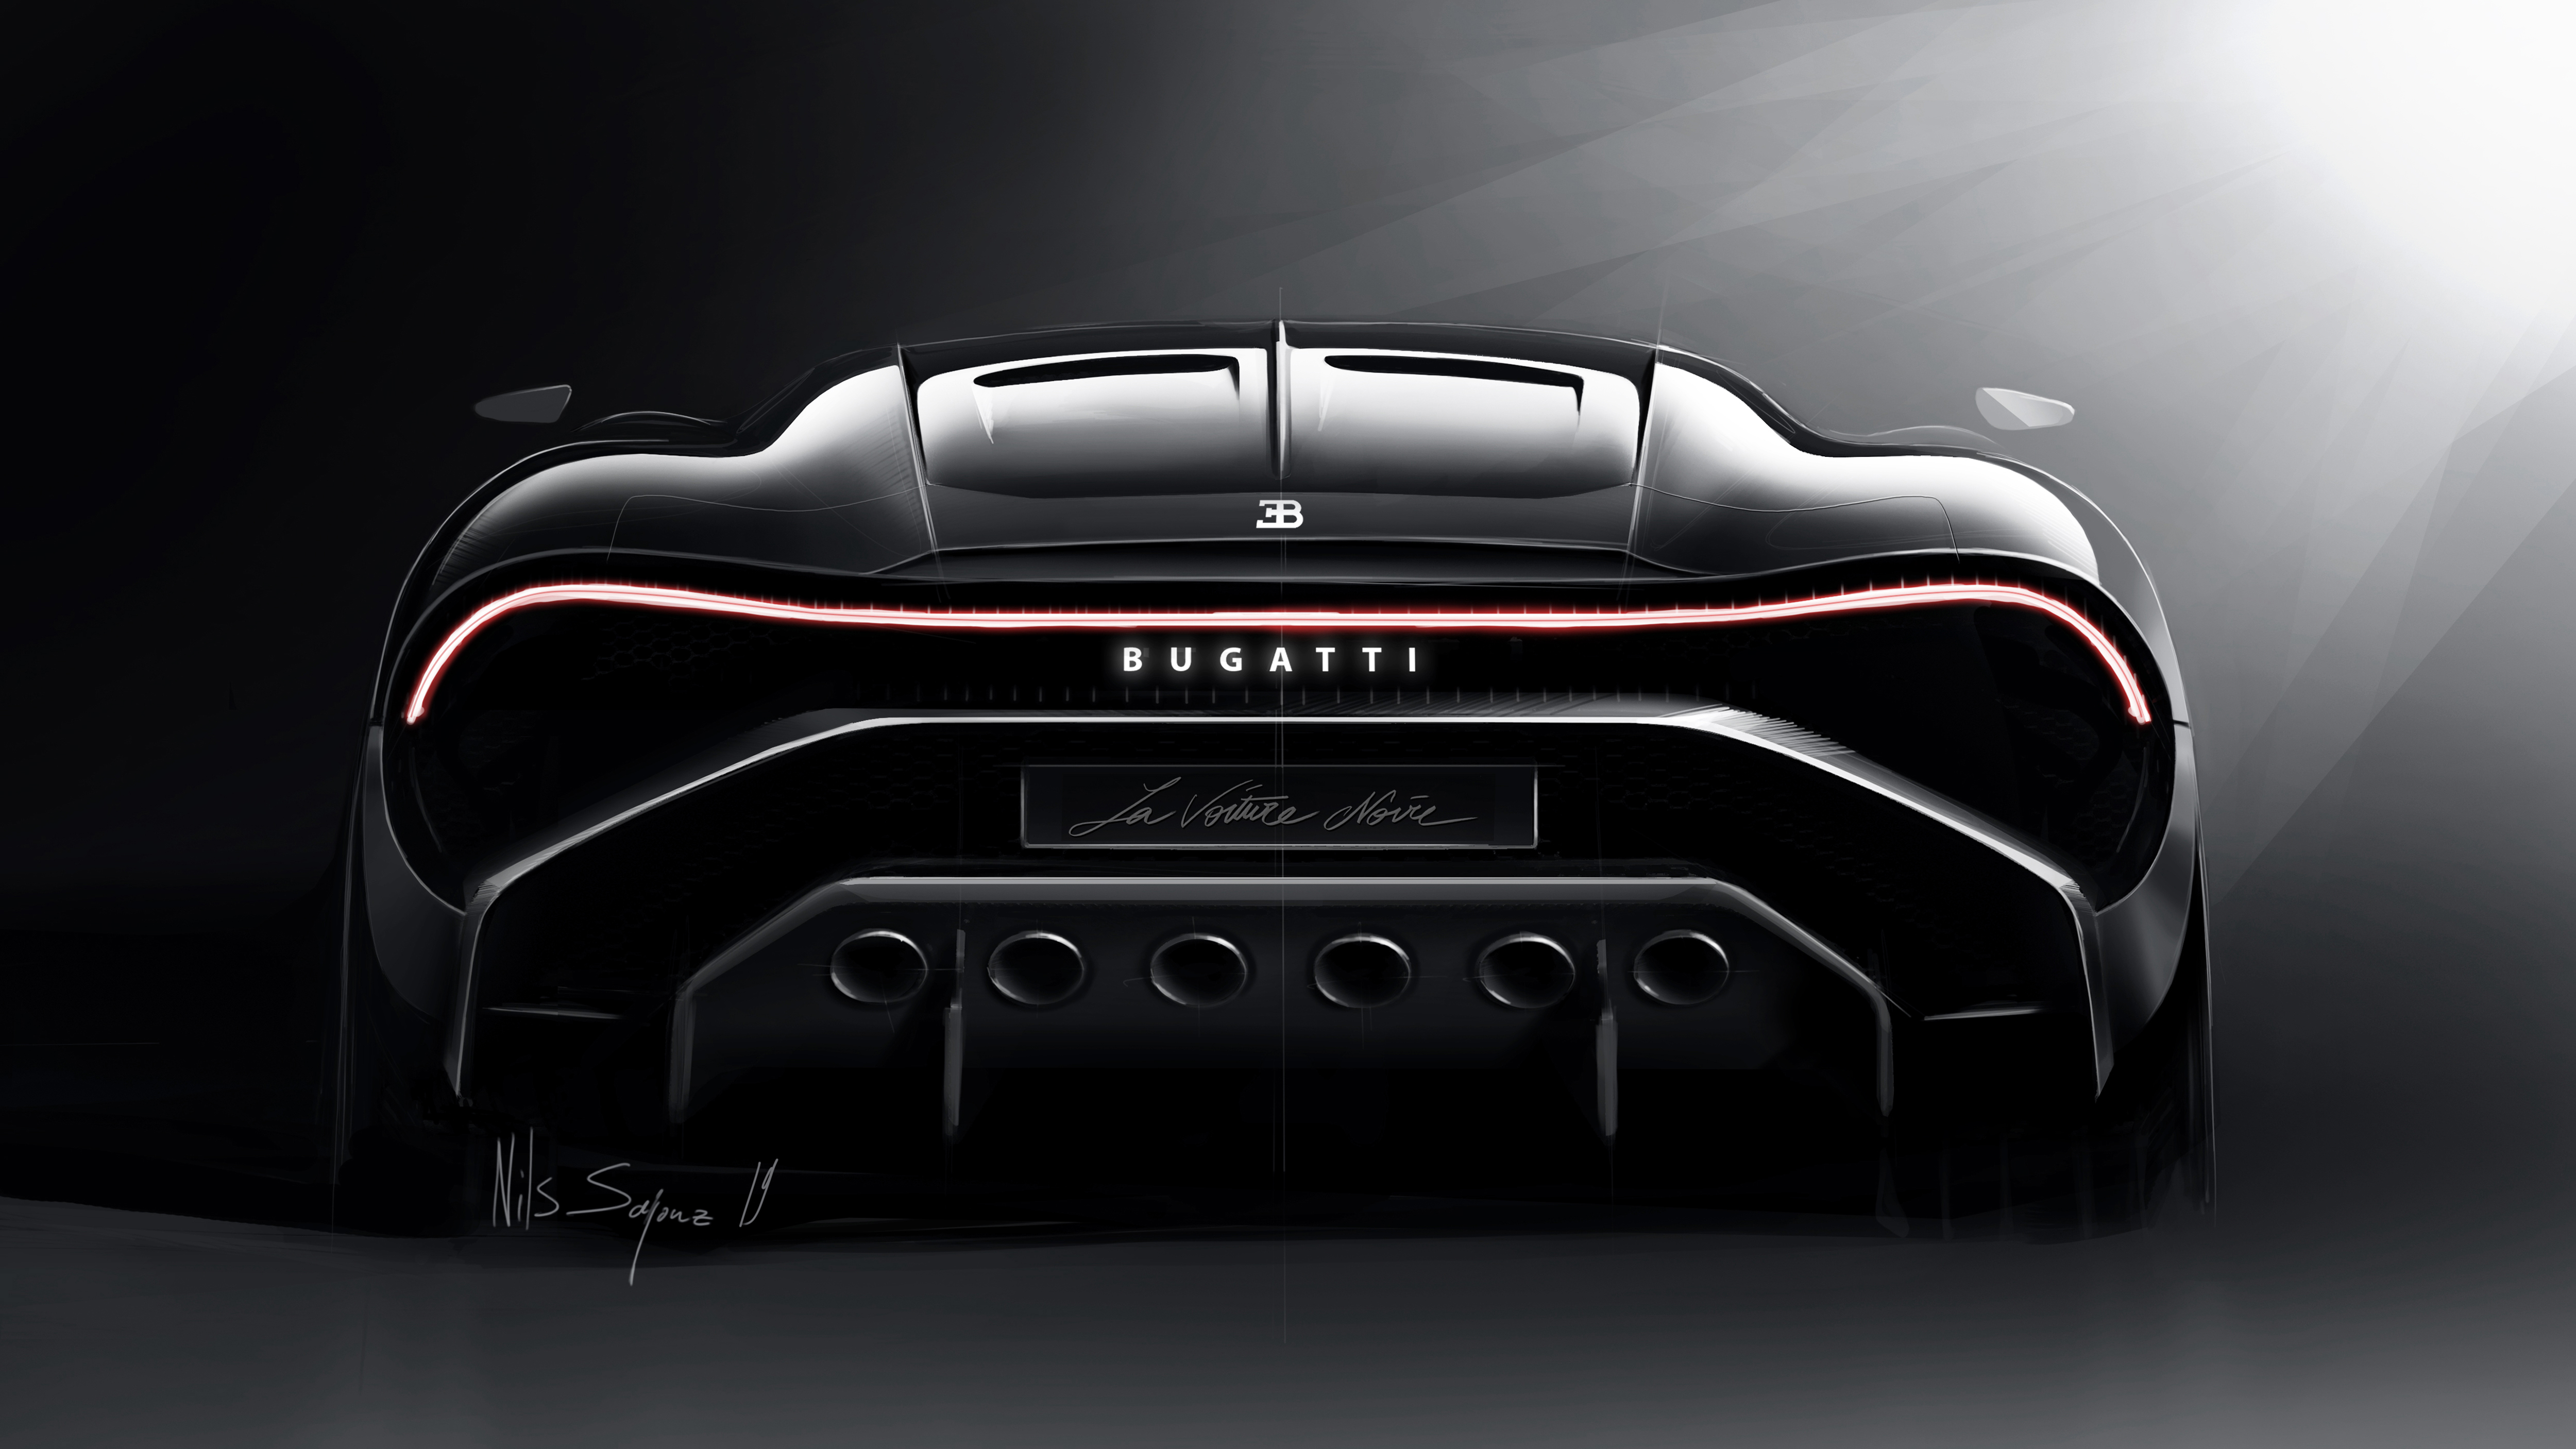 Wallpapers cars 2019 cars Bugatti La Voiture Noire on the desktop